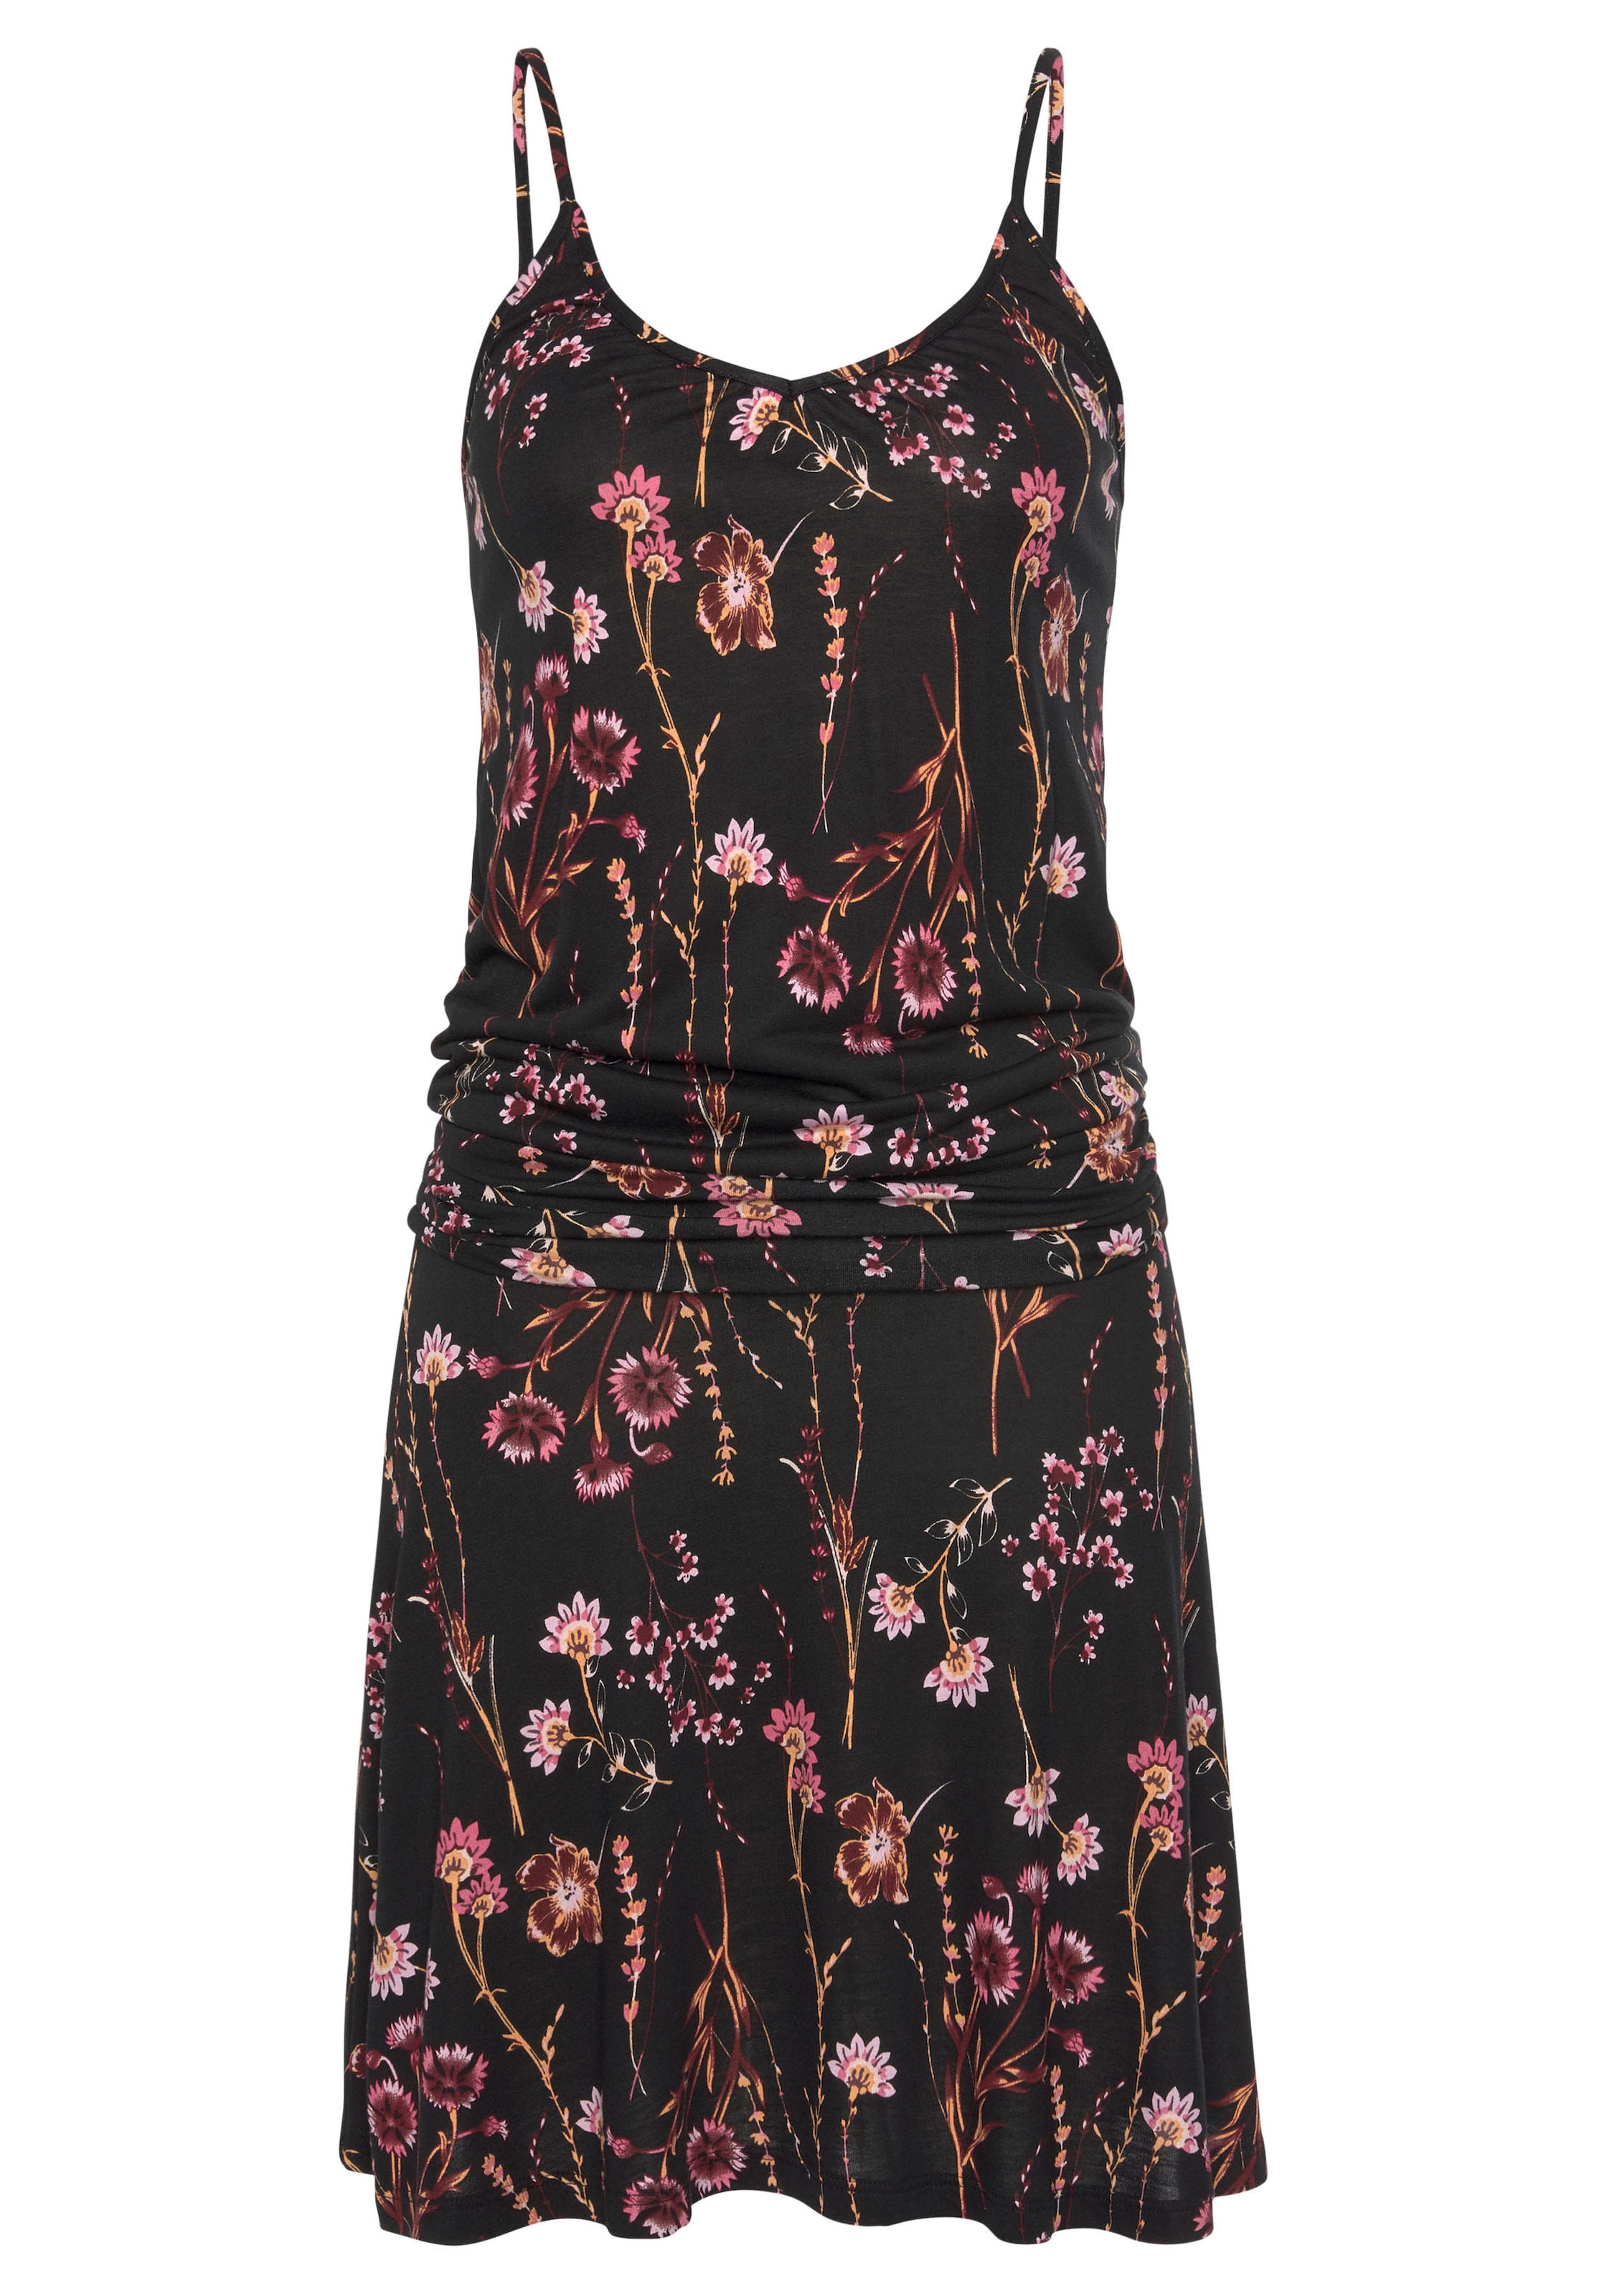 LASCANA Strandkleid, mit Blumenprint, figurumspielendes Sommerkleid, Jerseykleid